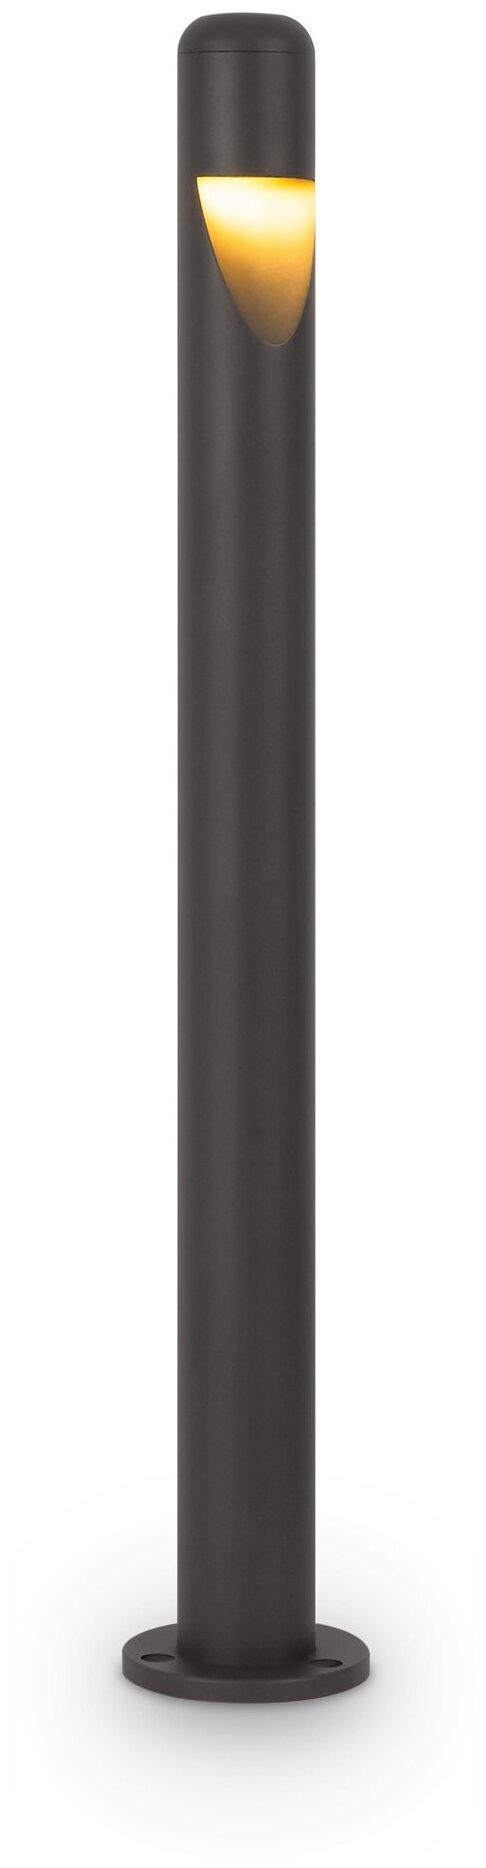 MAYTONI Ландшафтный светильник Hagen O423FL-L5GF светодиодный, 10 Вт, цвет арматуры: серый, цвет плафона серый